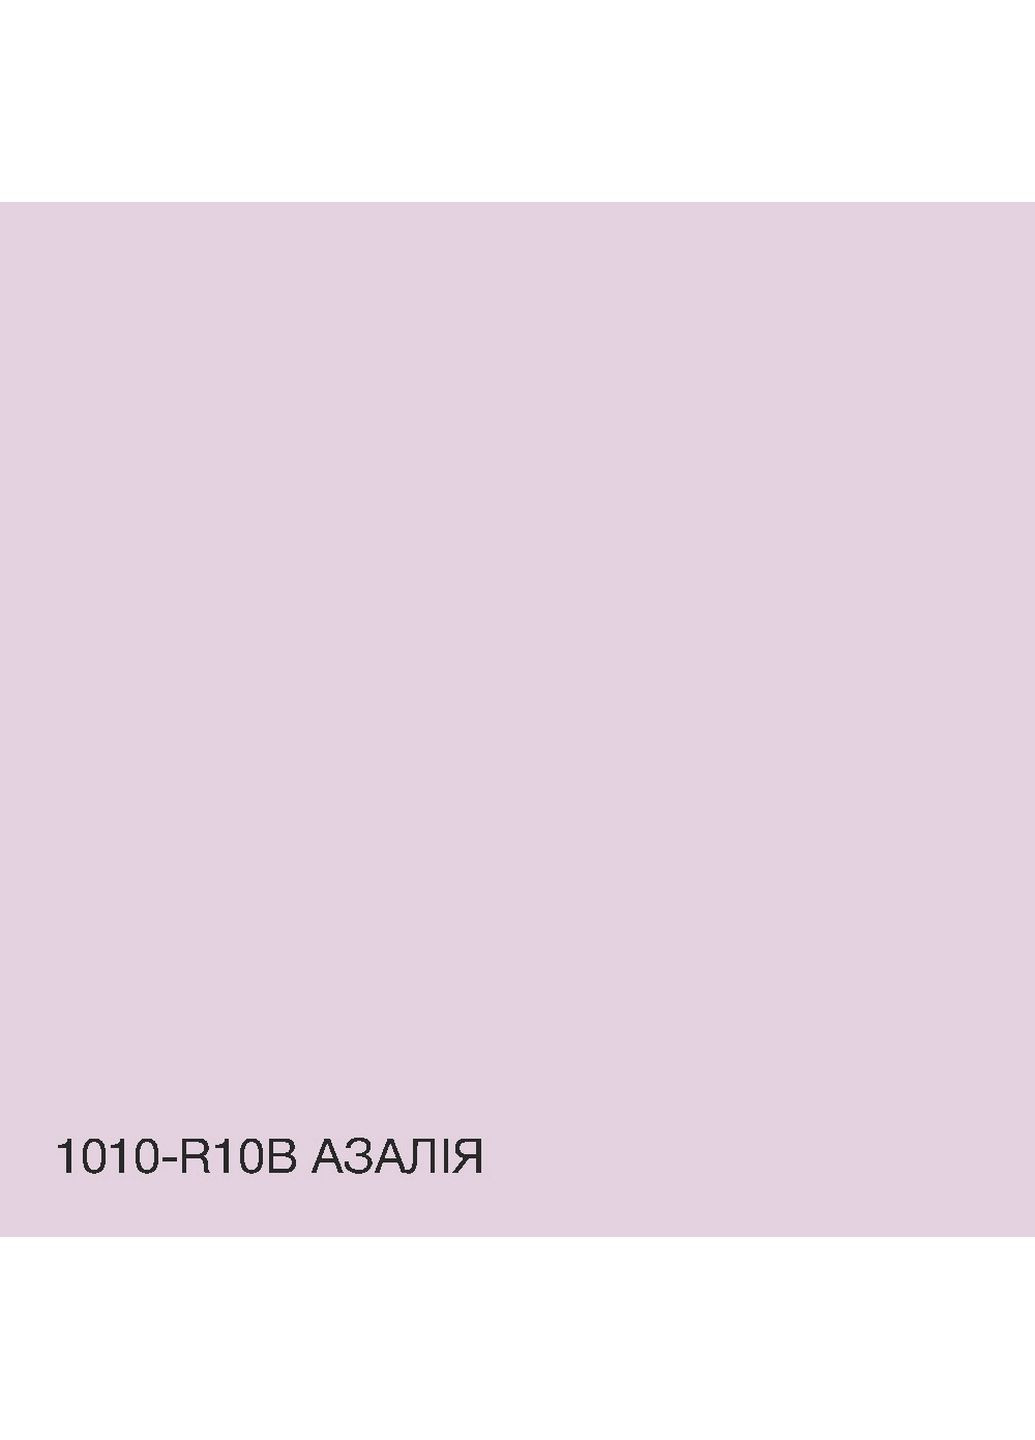 Фасадная краска акрил-латексная 1010-R10B 5 л SkyLine (283326023)